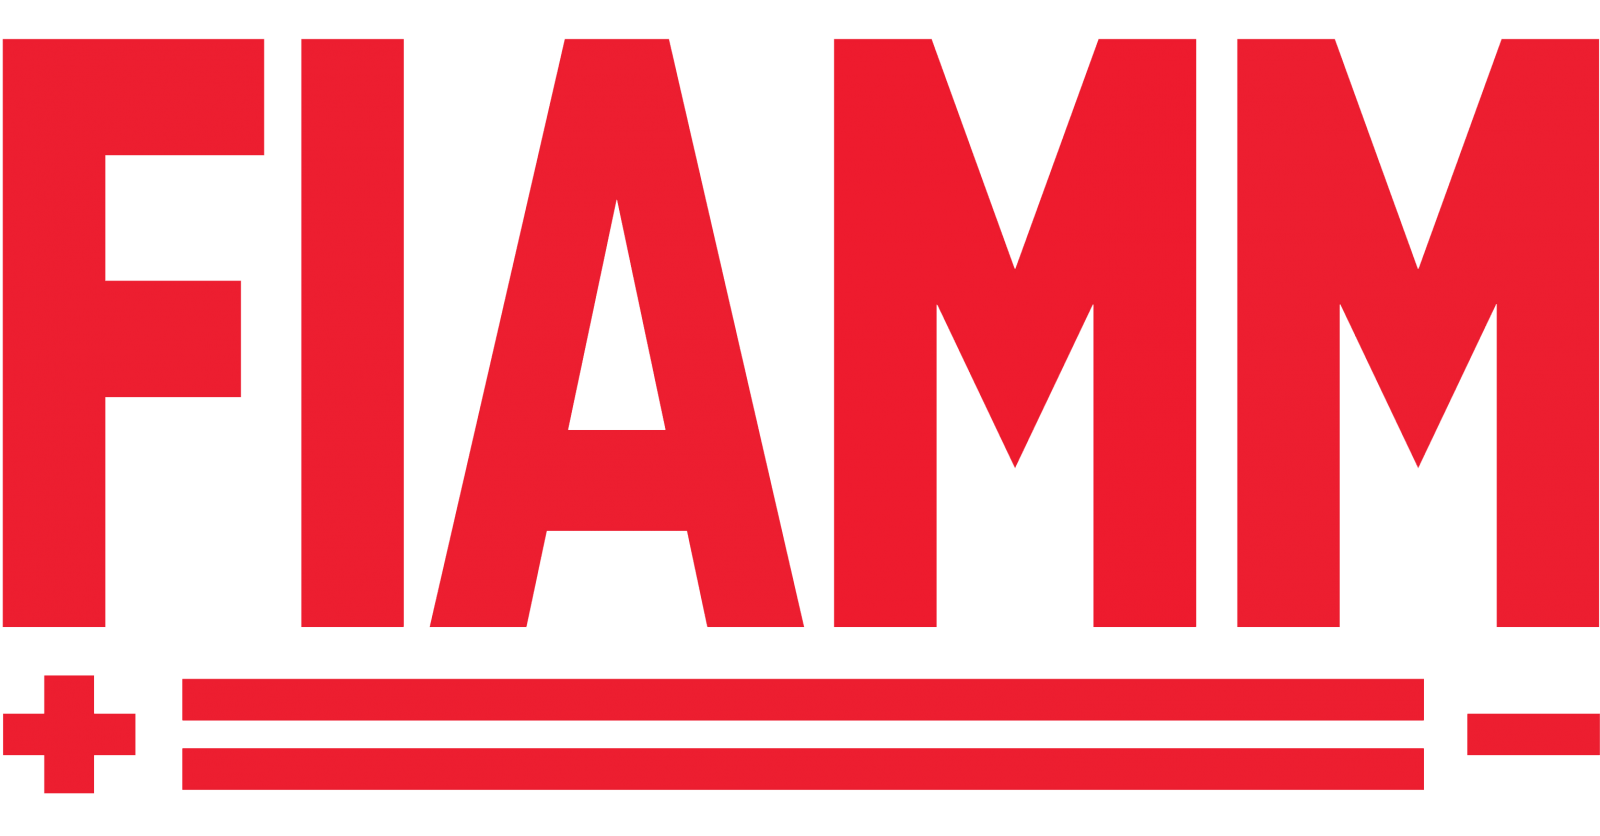 fiamm-logo